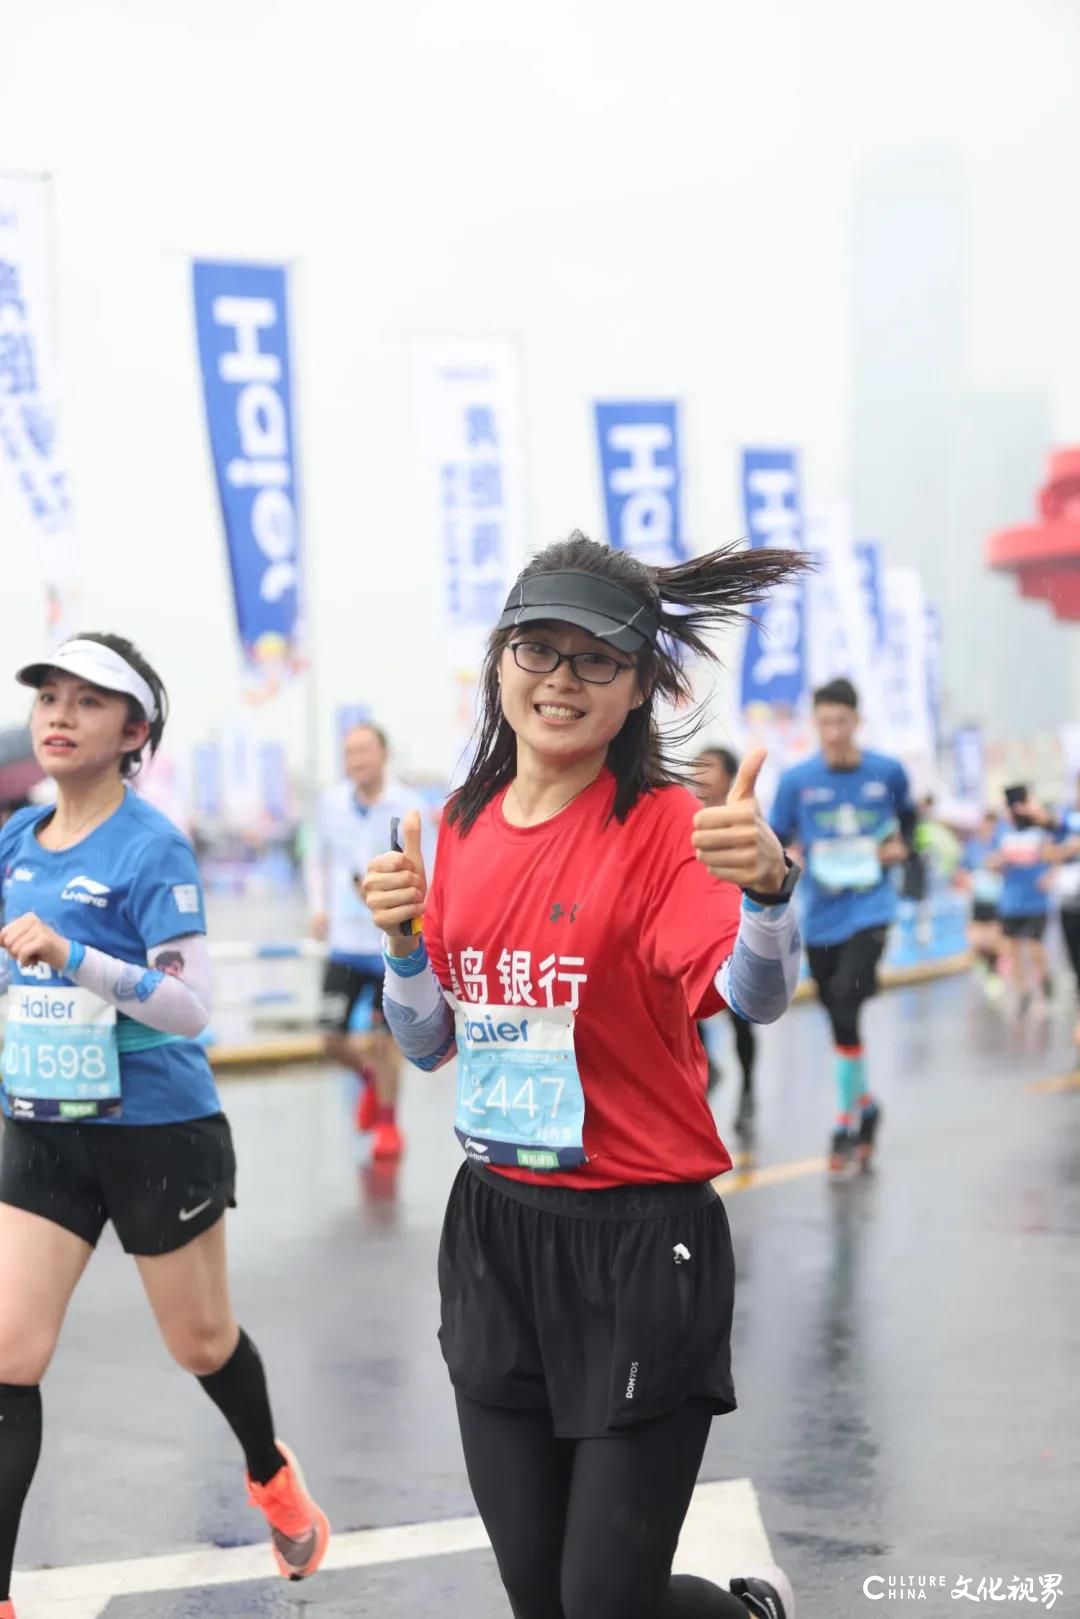 青岛银行Q-Run跑团雨中出征2021青岛国际马拉松，全员完赛 成绩喜人